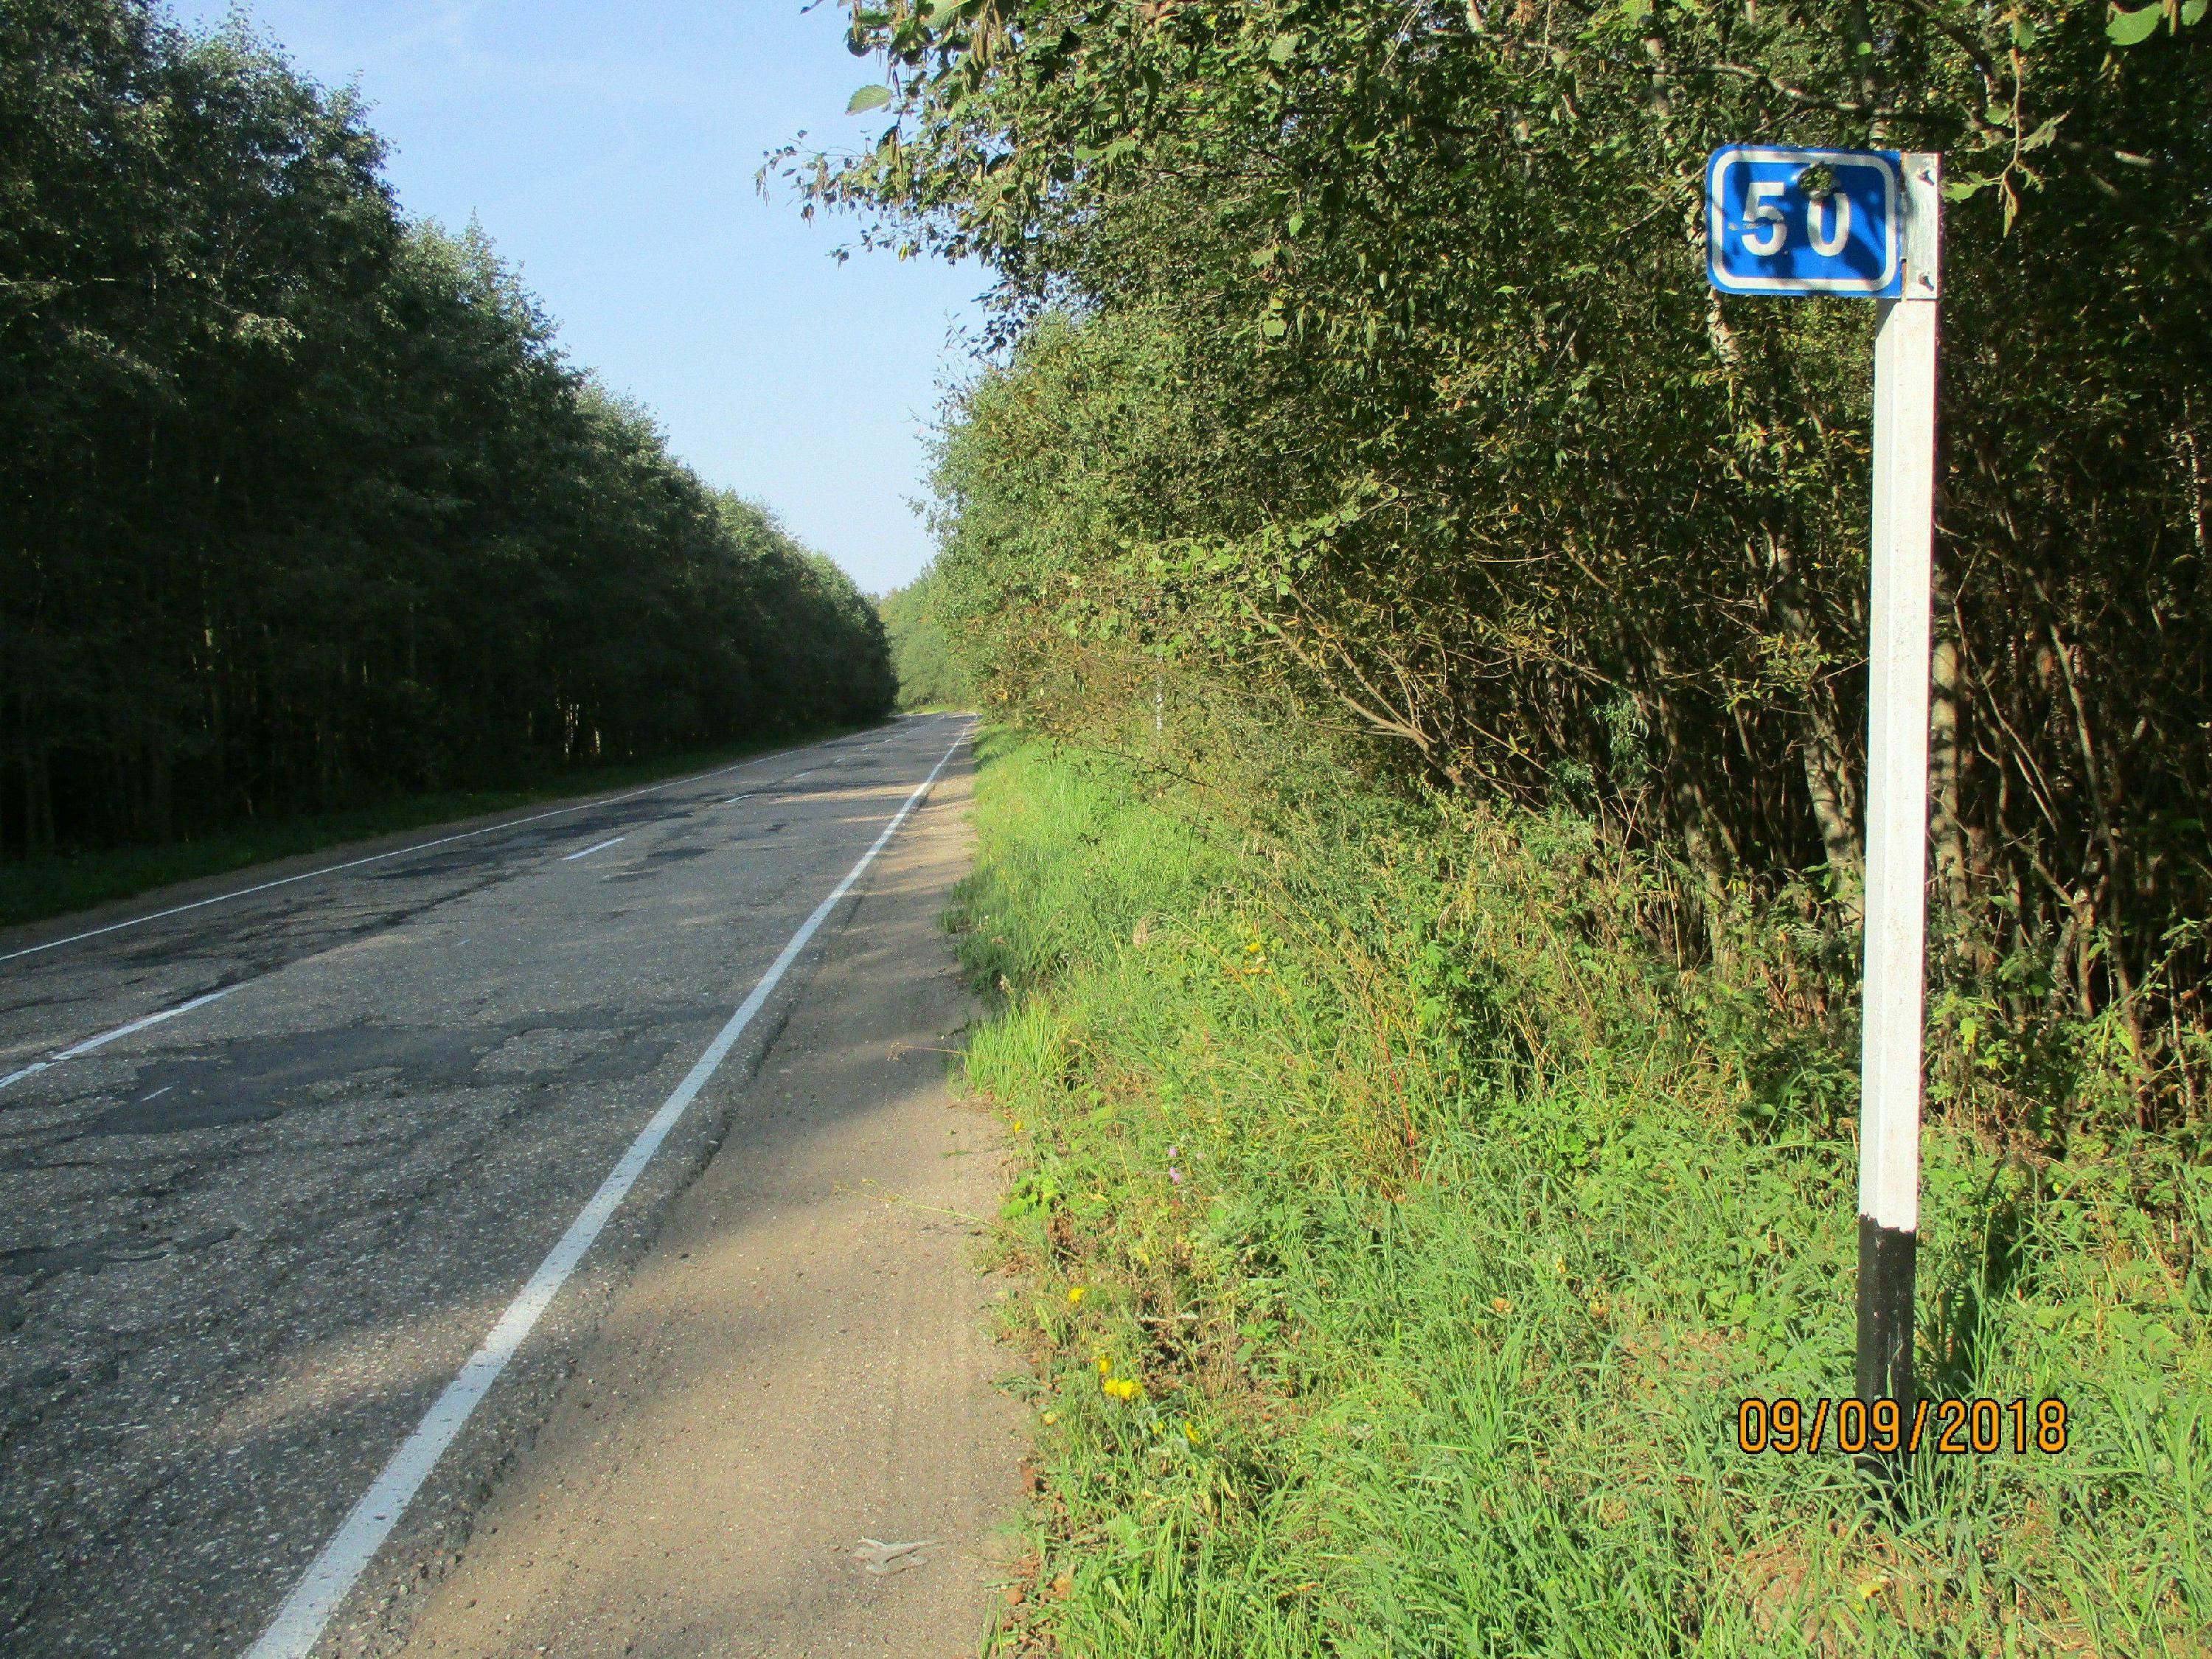 Остановка 50 км. Знак 6.13 километровый знак. Дорожные знаки километровые. Километровые столбы на дороге. Километровый знак на трассе.